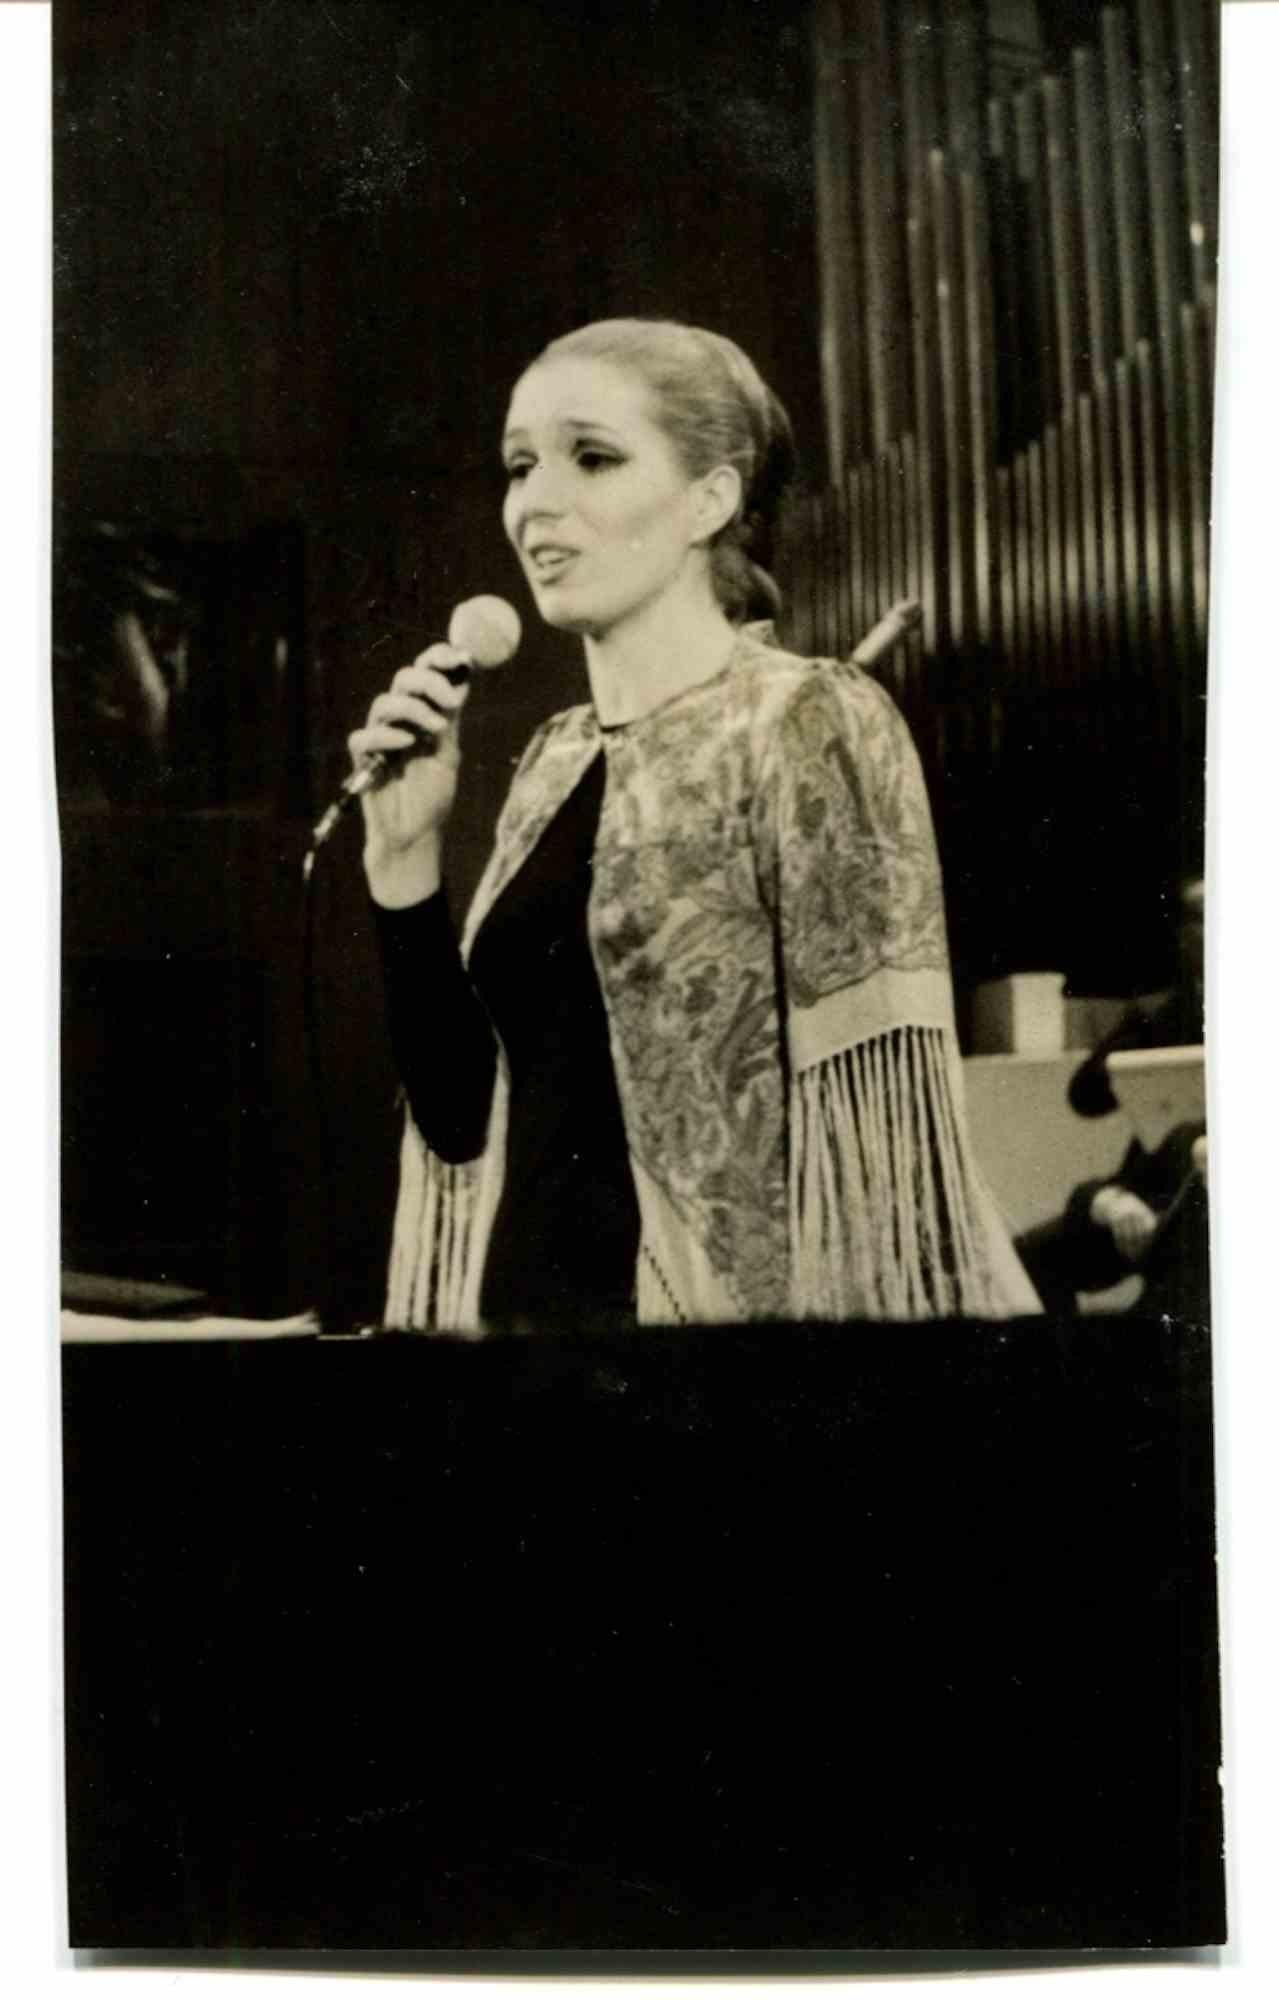 Unknown Figurative Photograph – Porträt von Iva Zanicchi beim Singen - 1970er Jahre